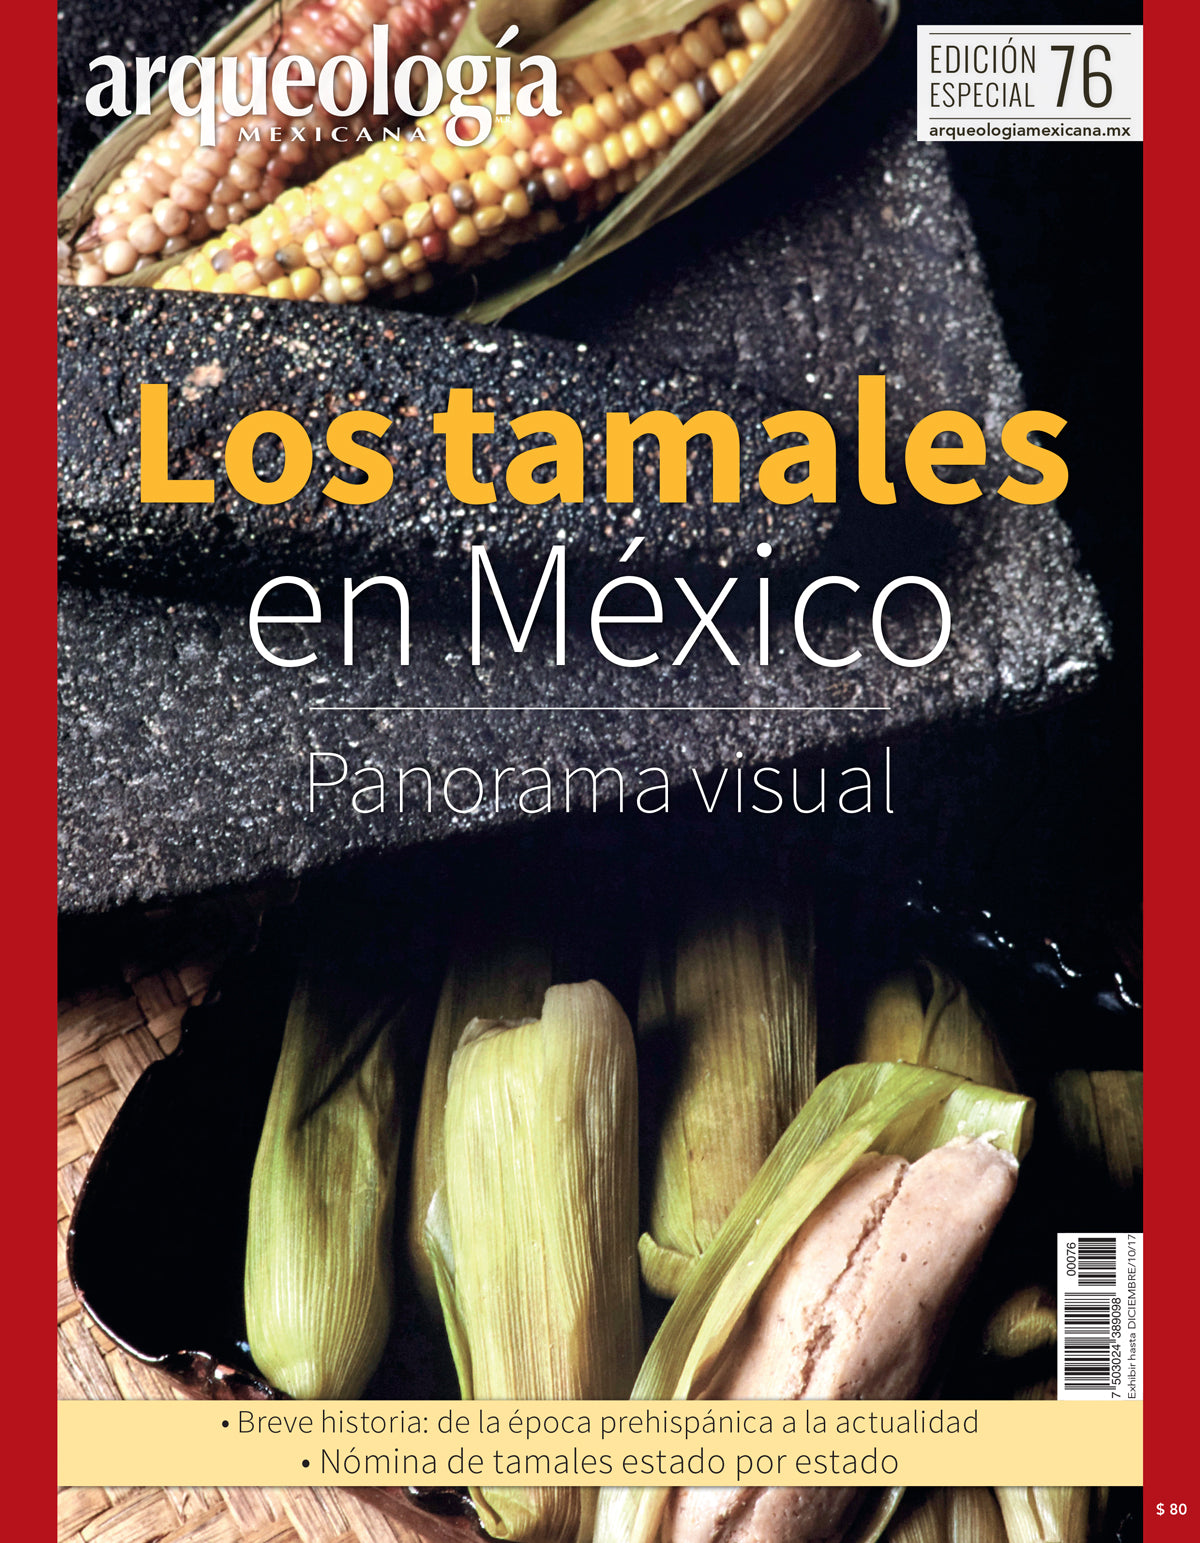 Los tamales en México: Panorama visual